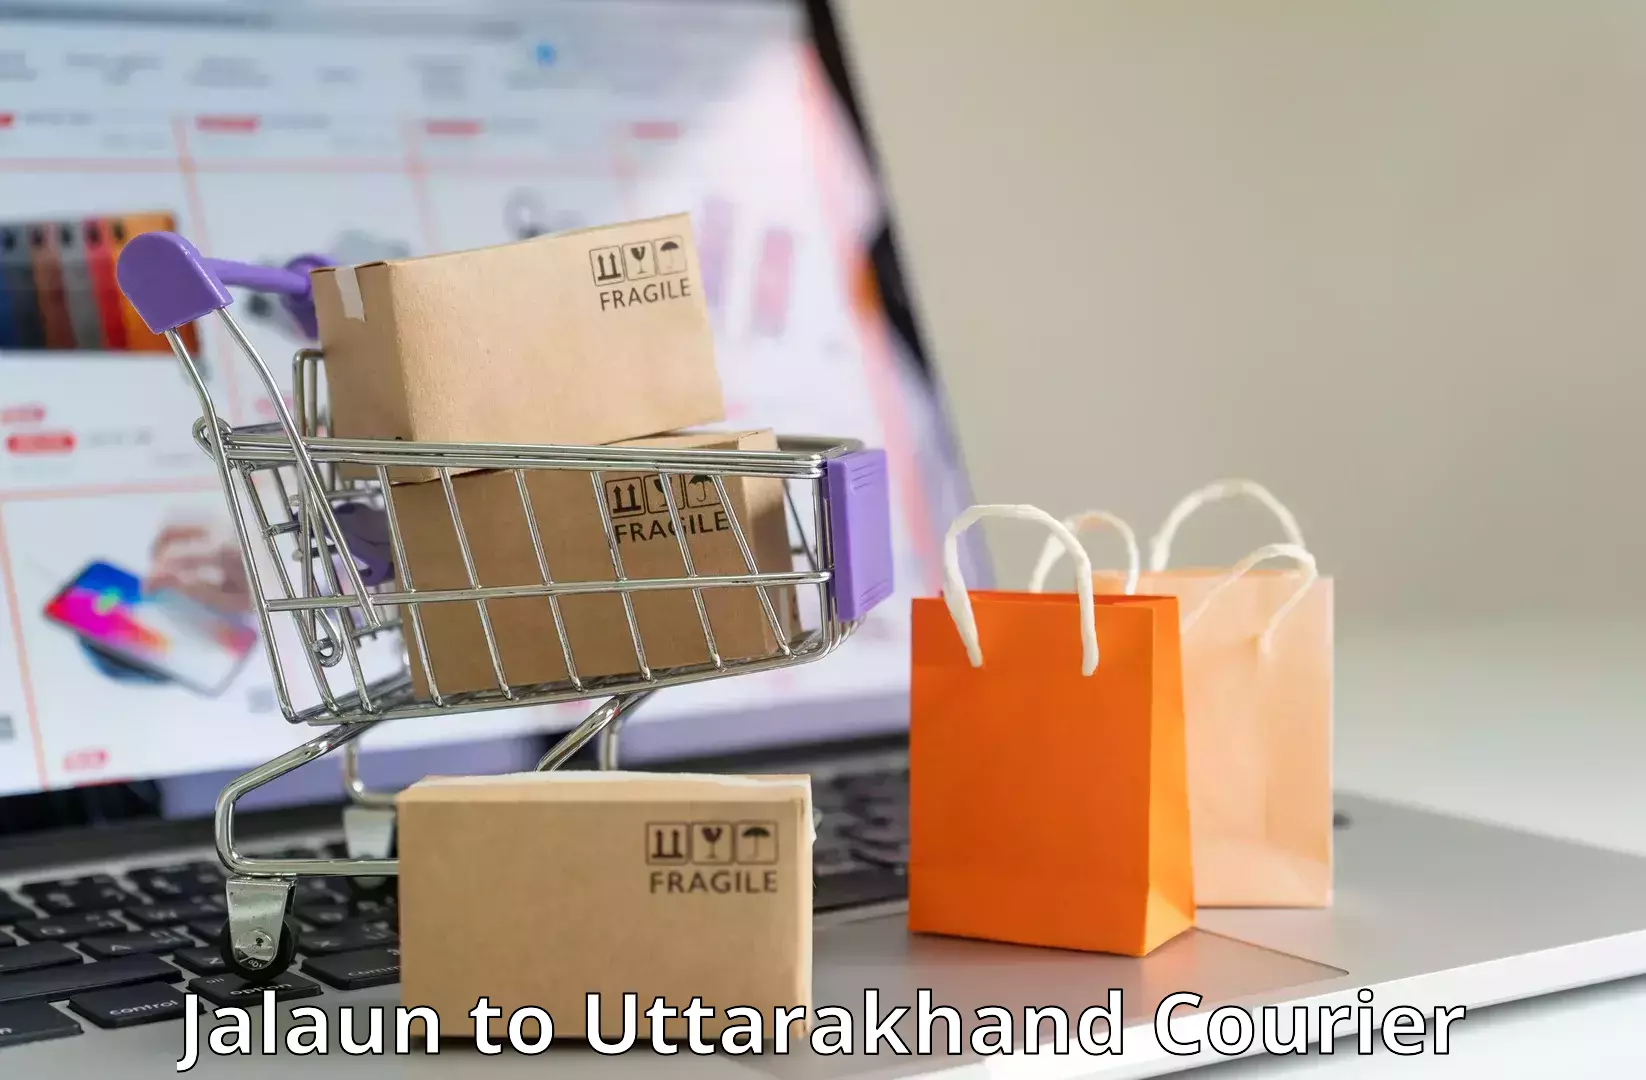 Nationwide parcel services Jalaun to Uttarakhand